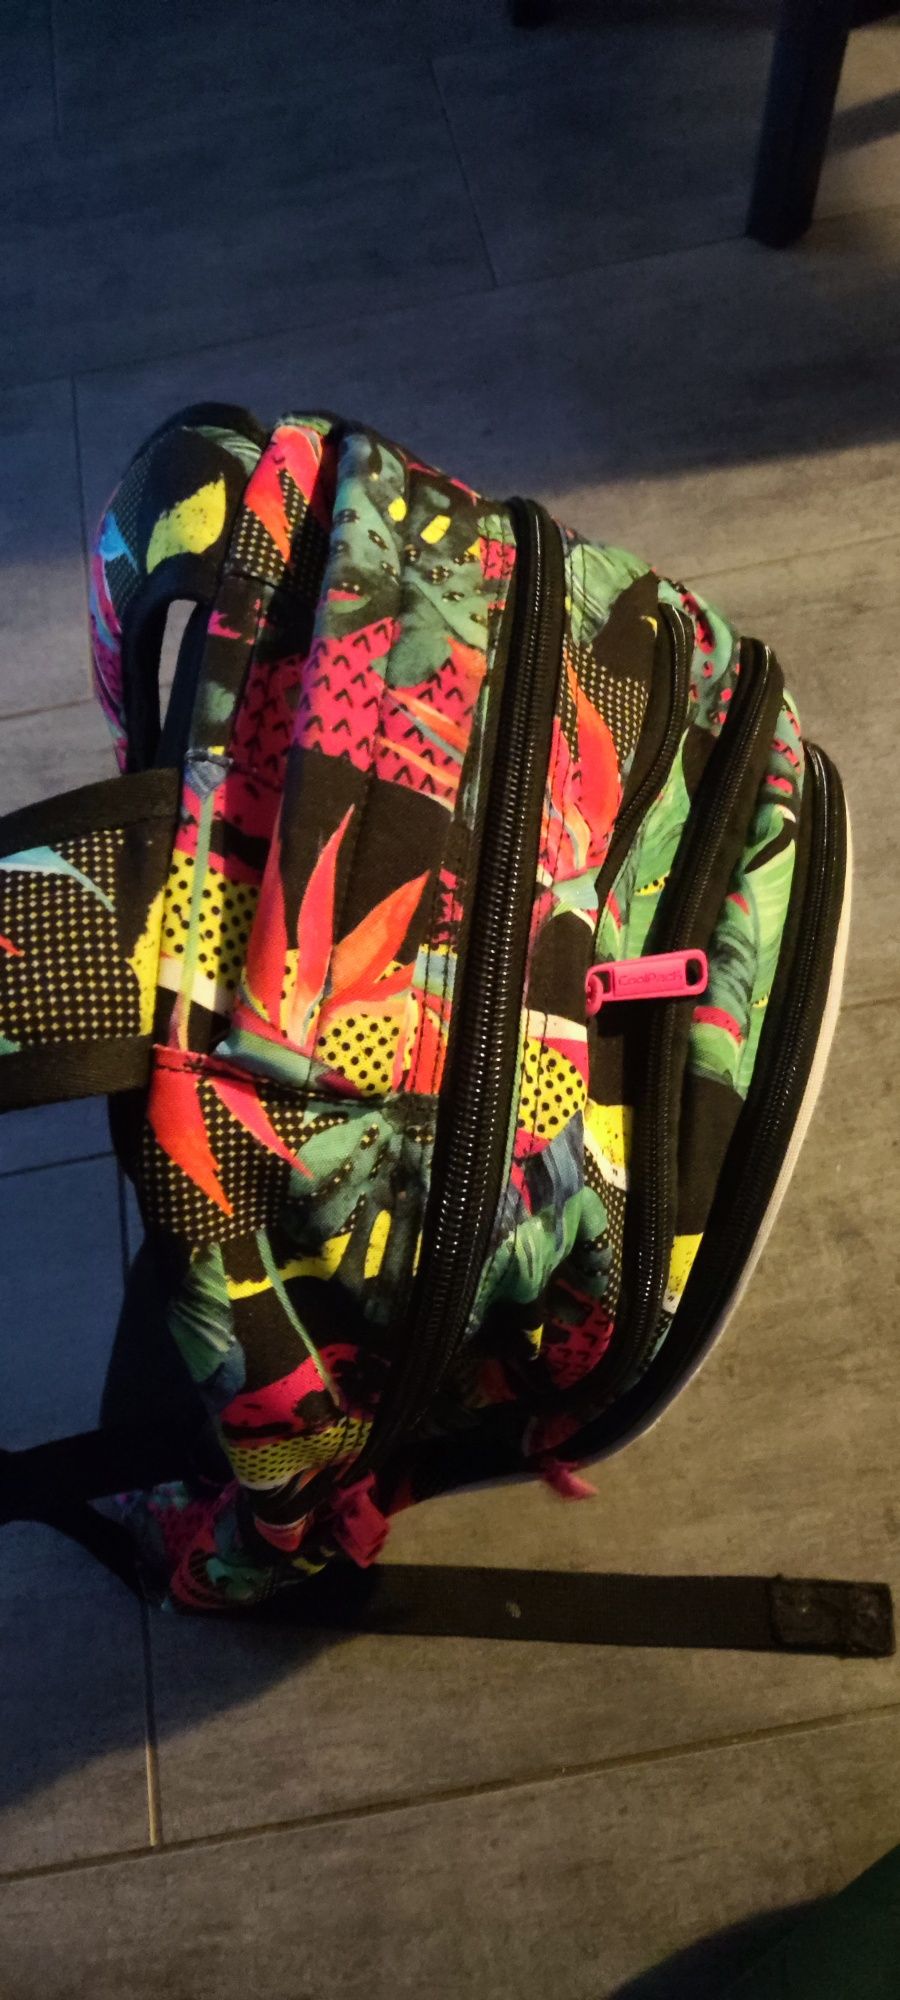 Plecak szkolny Coolpack z funkcją Led, motyw roślinny, egzotyczny.